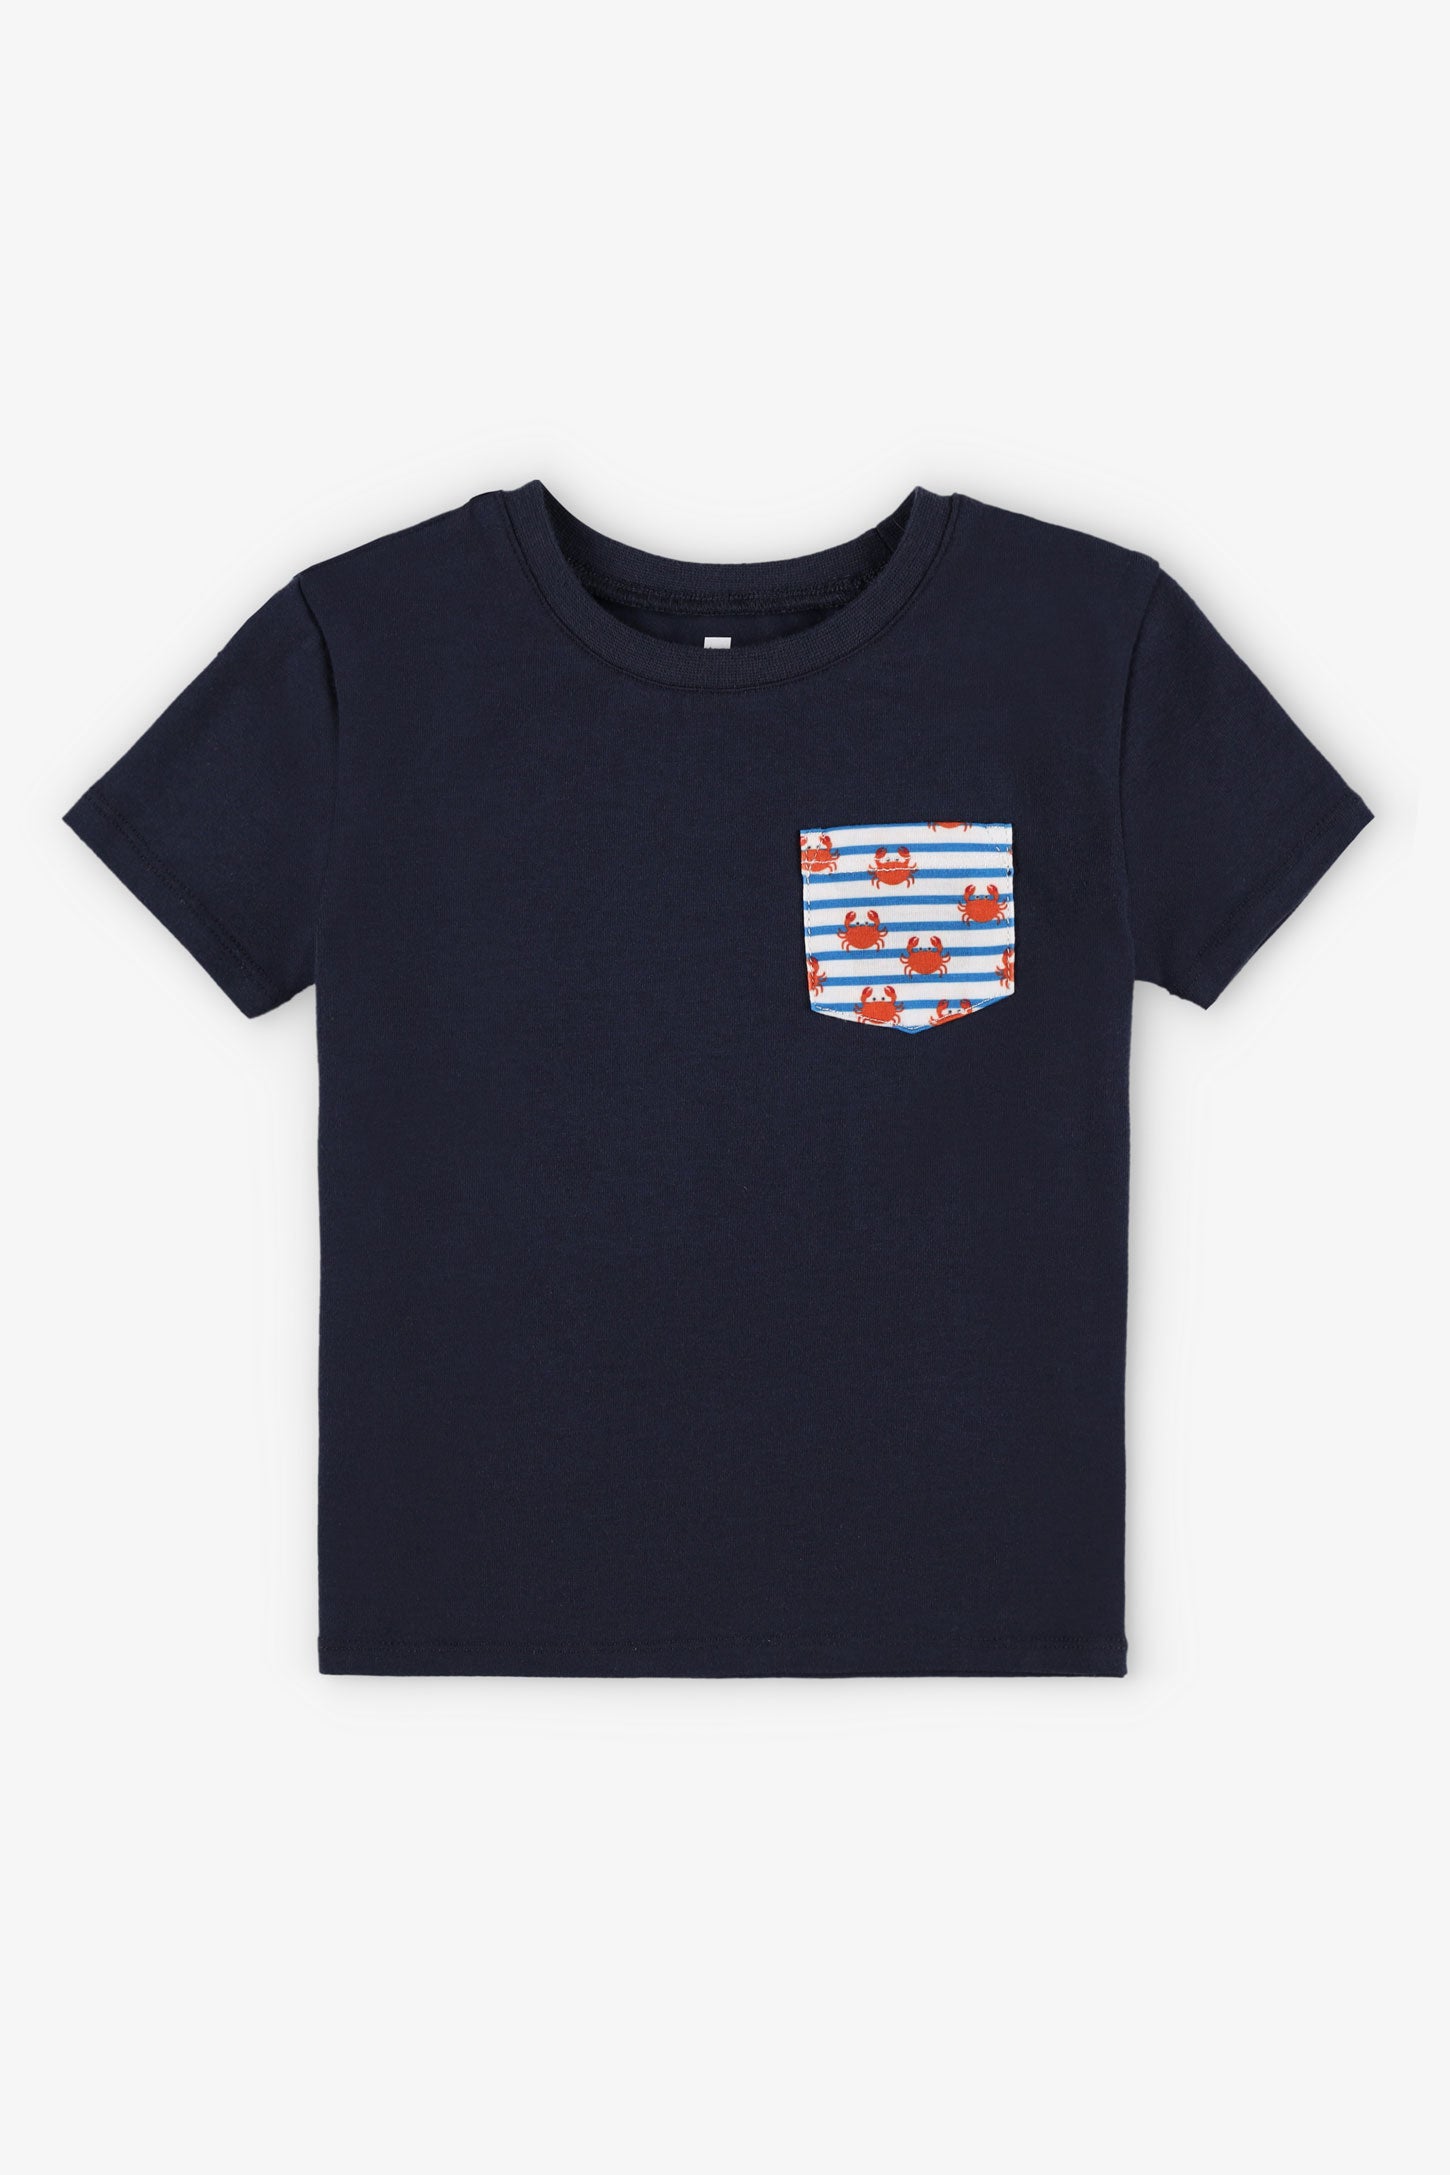 T-shirt col rond coupe droite coton, 2/15$ - Bébé garçon && BLEU MARINE